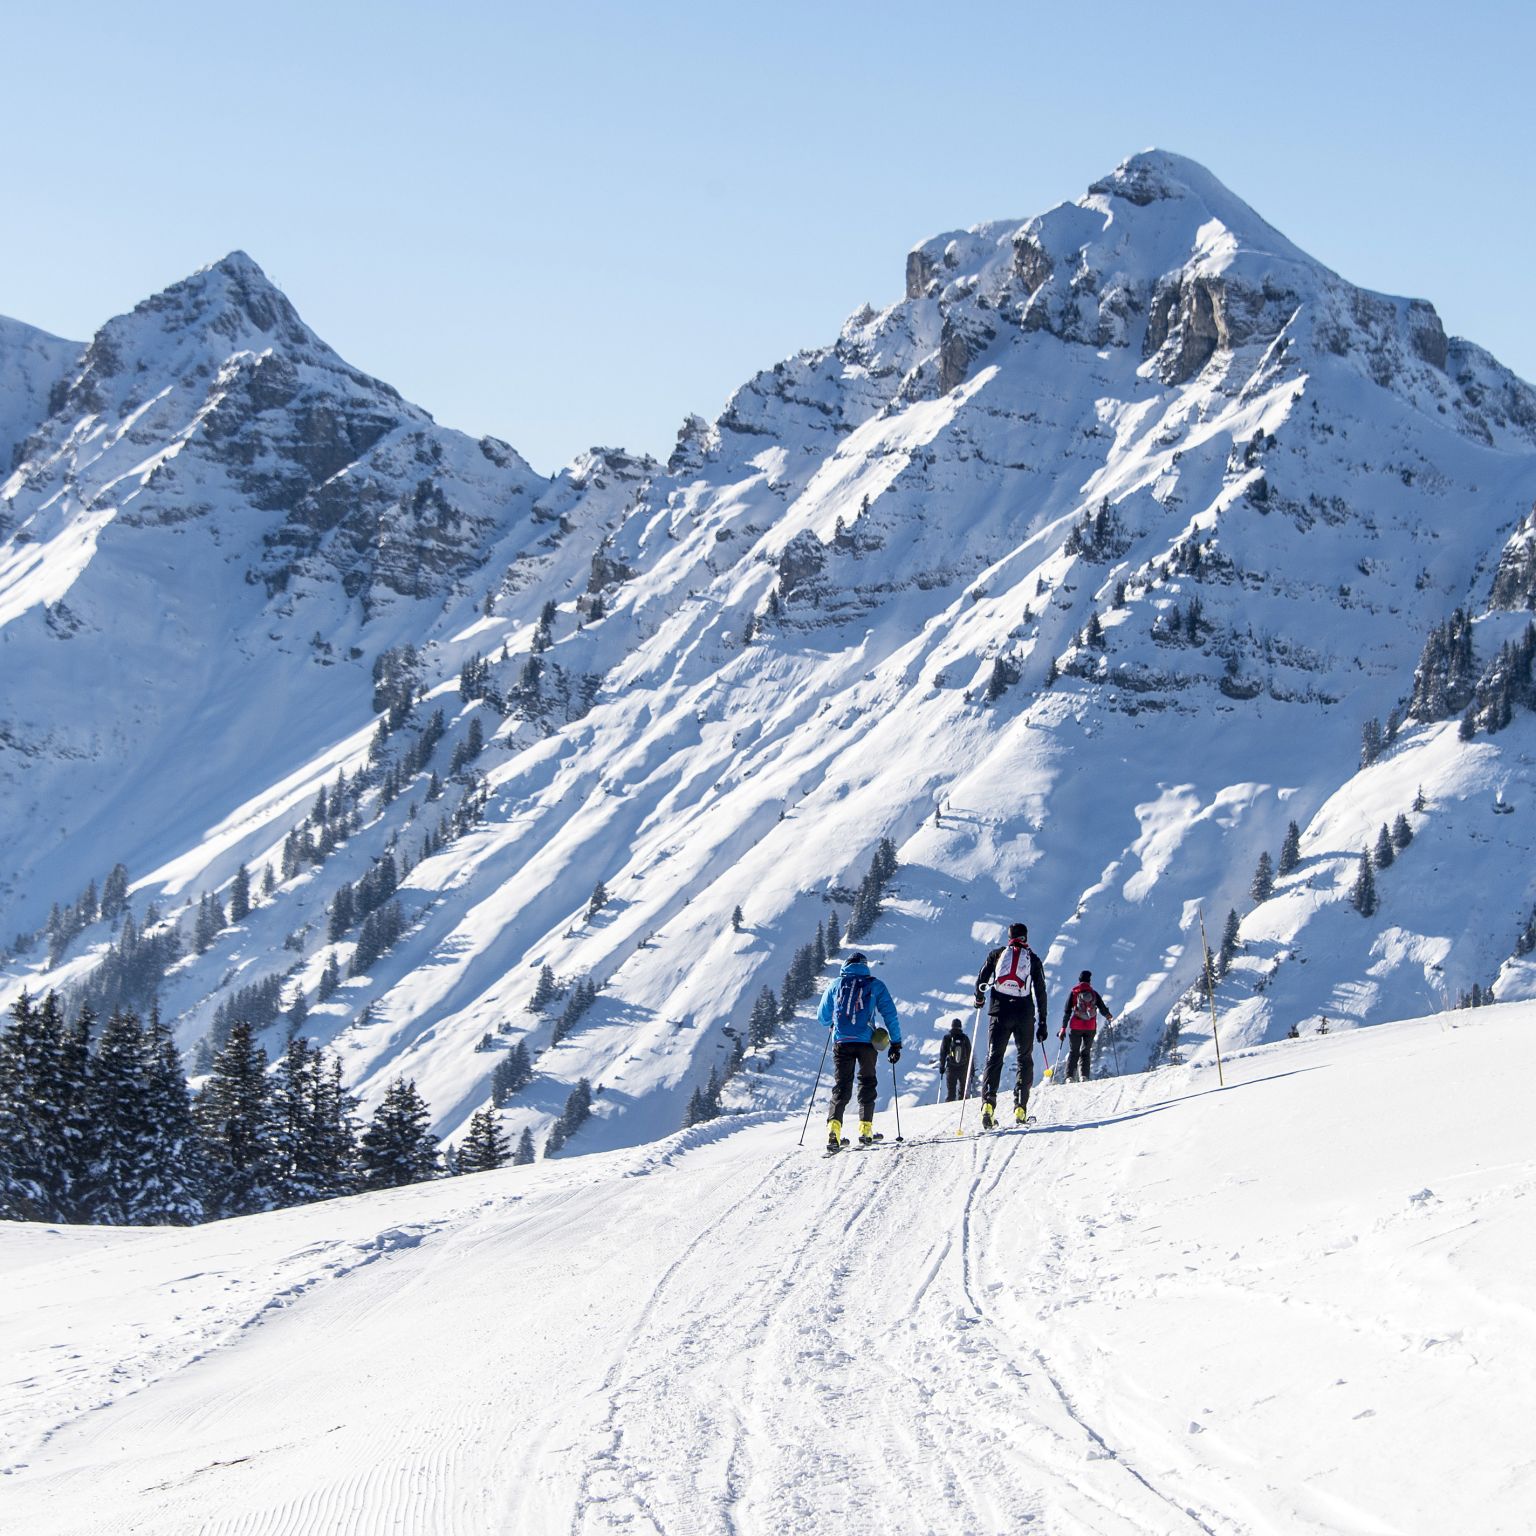 Ski de randonnée à Morgins, rando parc, ski touring, hiver en Valais, Suisse